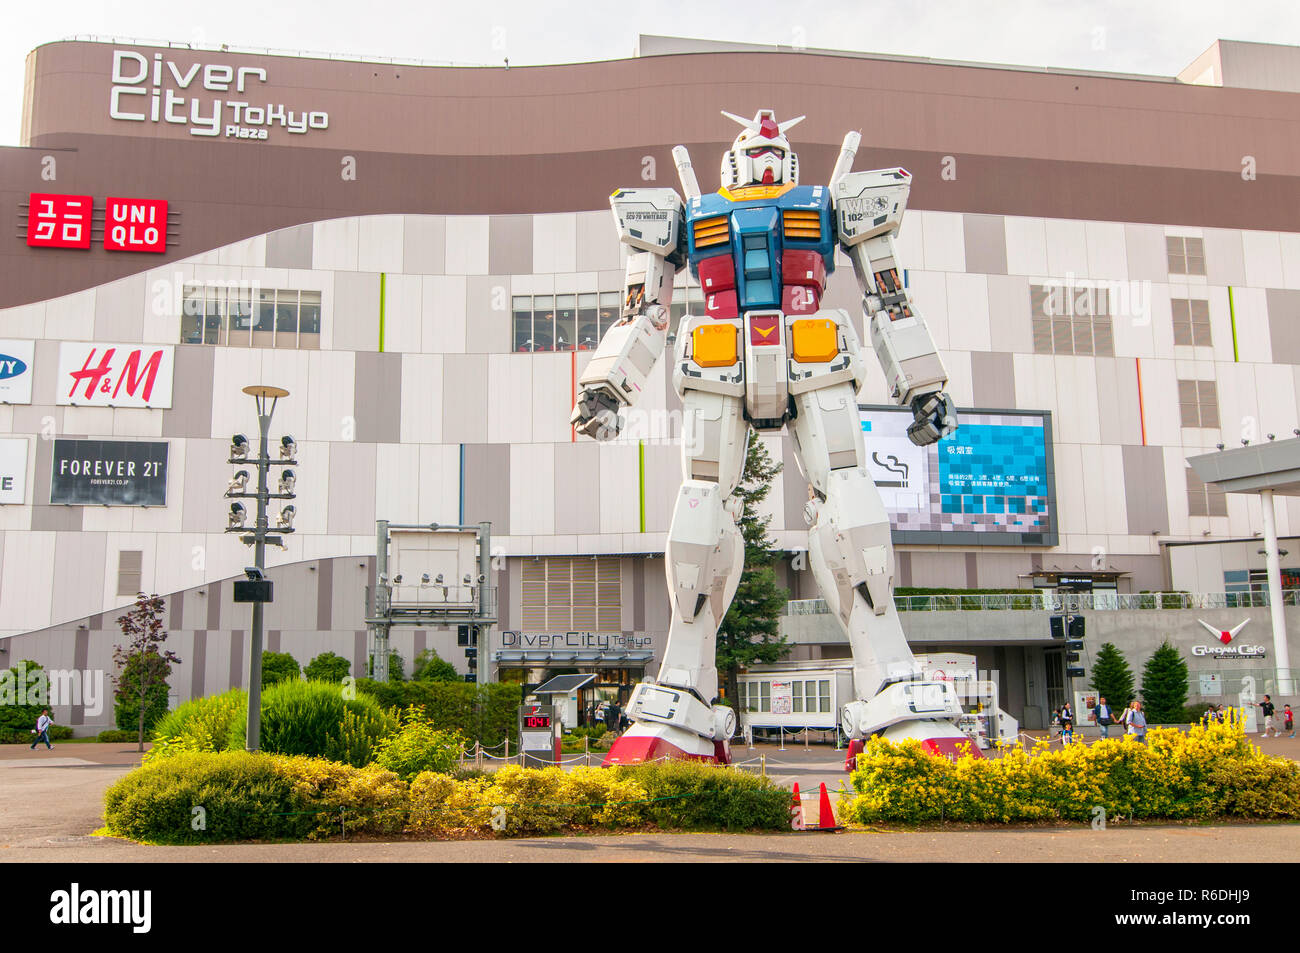 Full-Size Mobile Suit Gundam RX-78 Replica montre l'extérieur d'Odaiba, Tokyo Divercity Plaza Banque D'Images